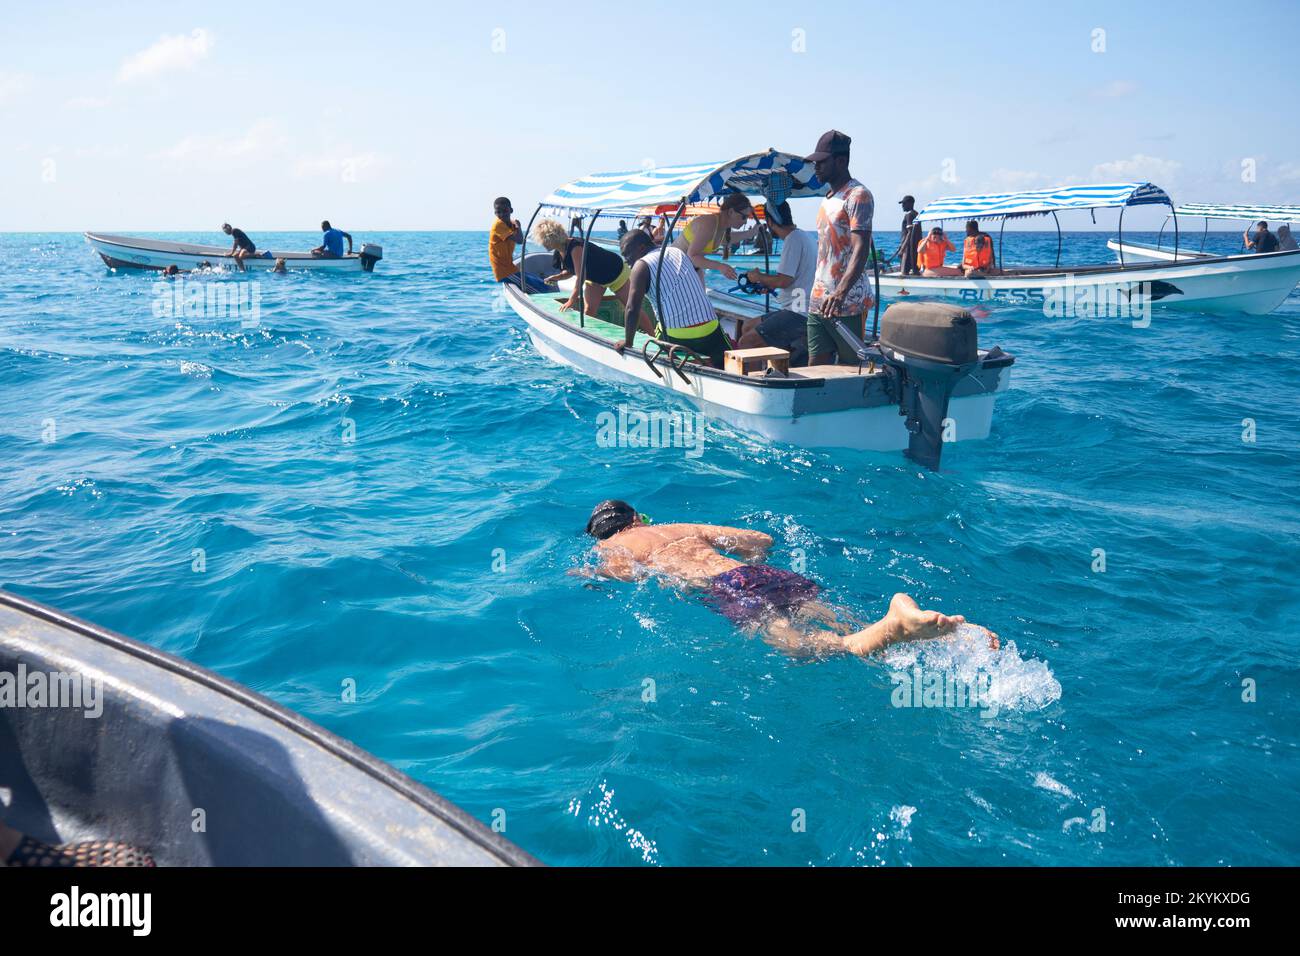 Les touristes sur la vue des dauphins voyant des excursions en bateau chasse les dauphins dans l'eau pour essayer de nager avec eux sur un site au large de la côte de l'atoll de Mnemba à Zanzibar, Banque D'Images